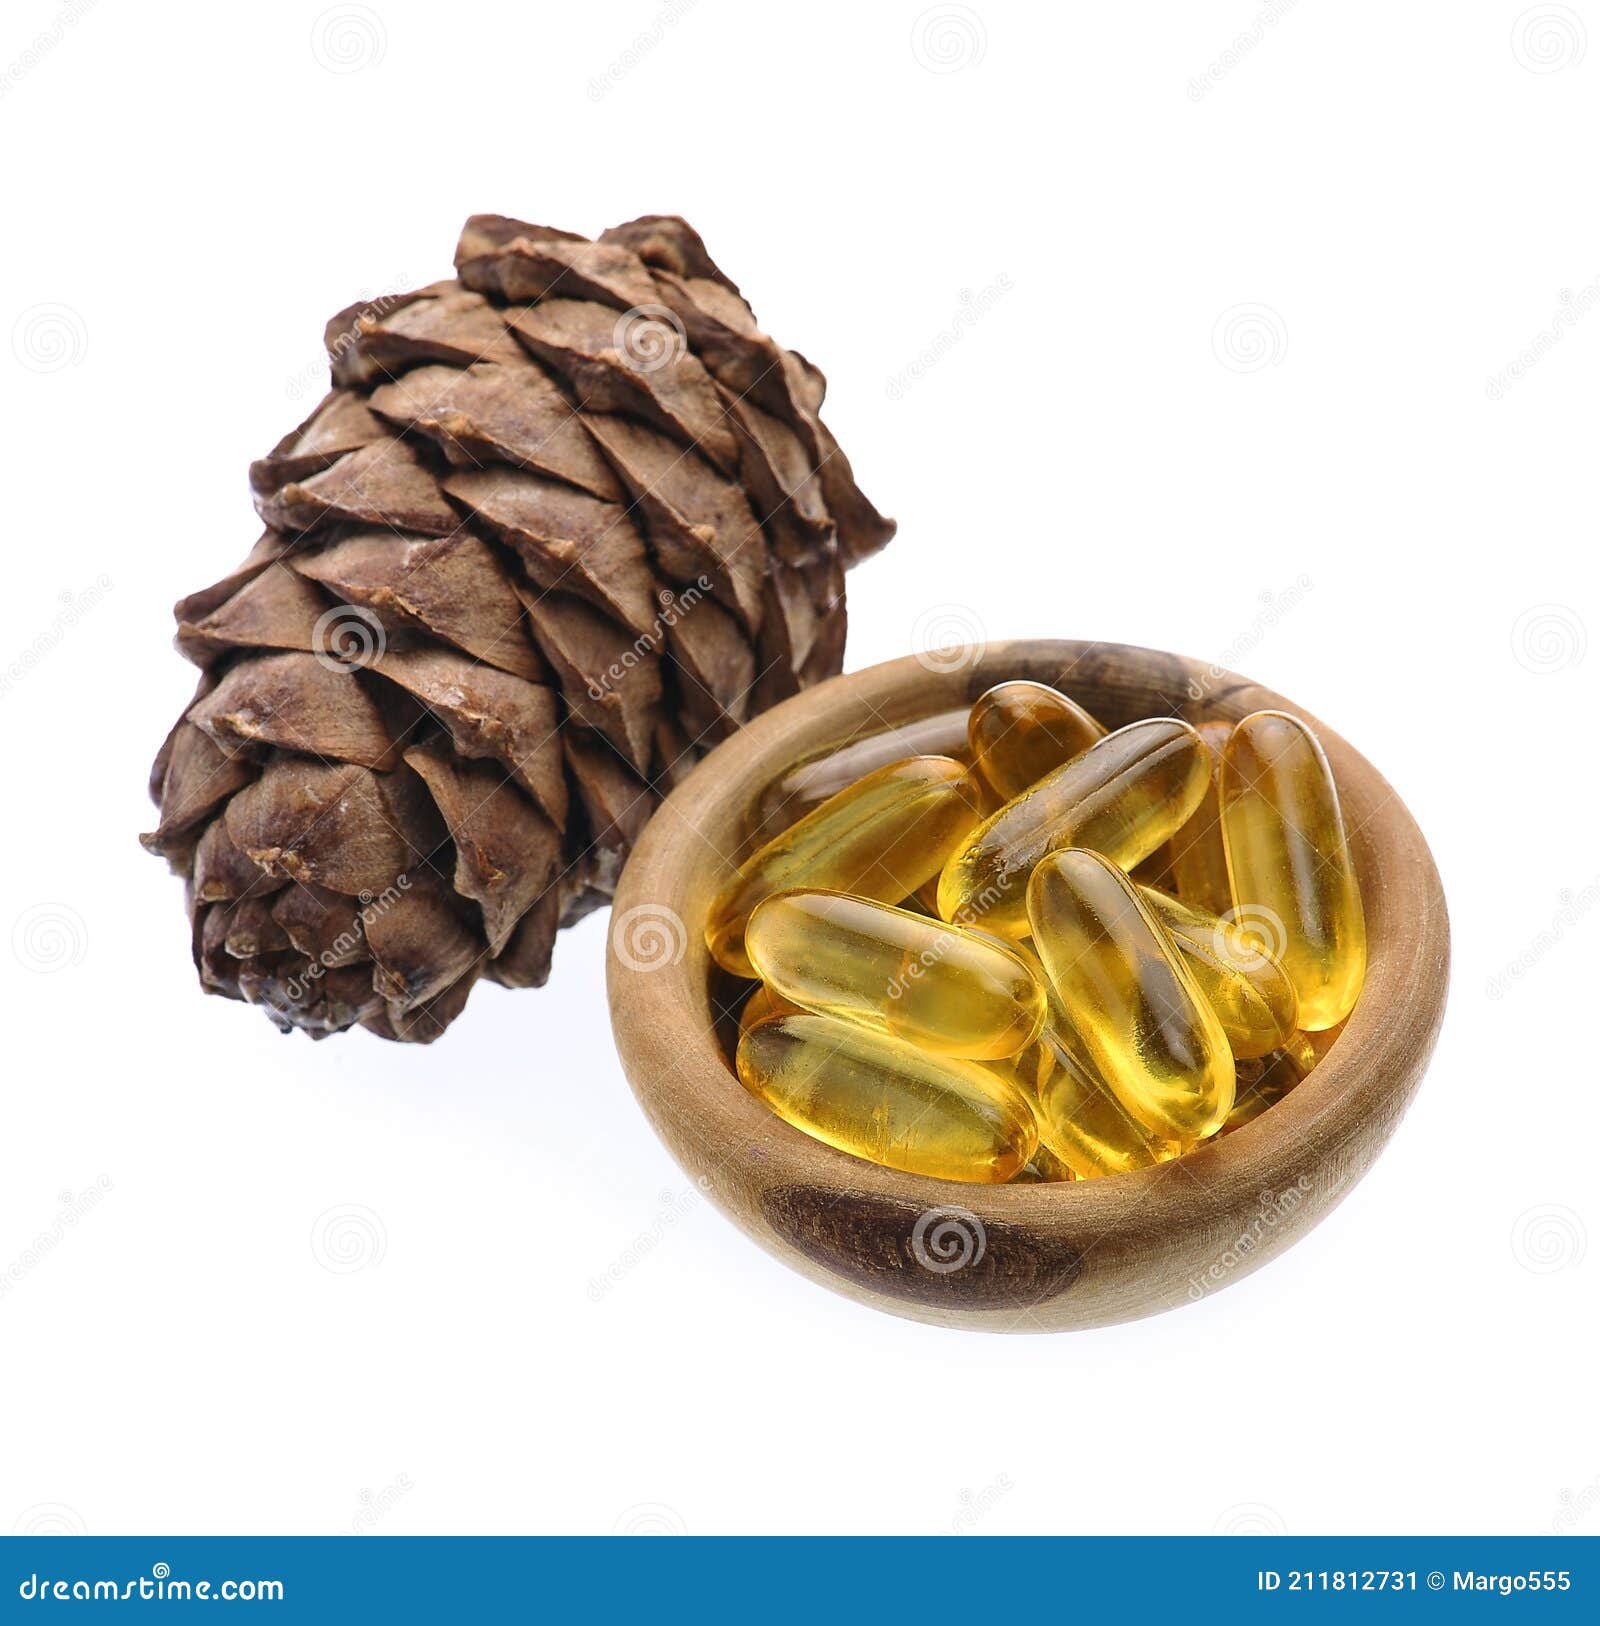 capsules of oil turpentine with cedar cone